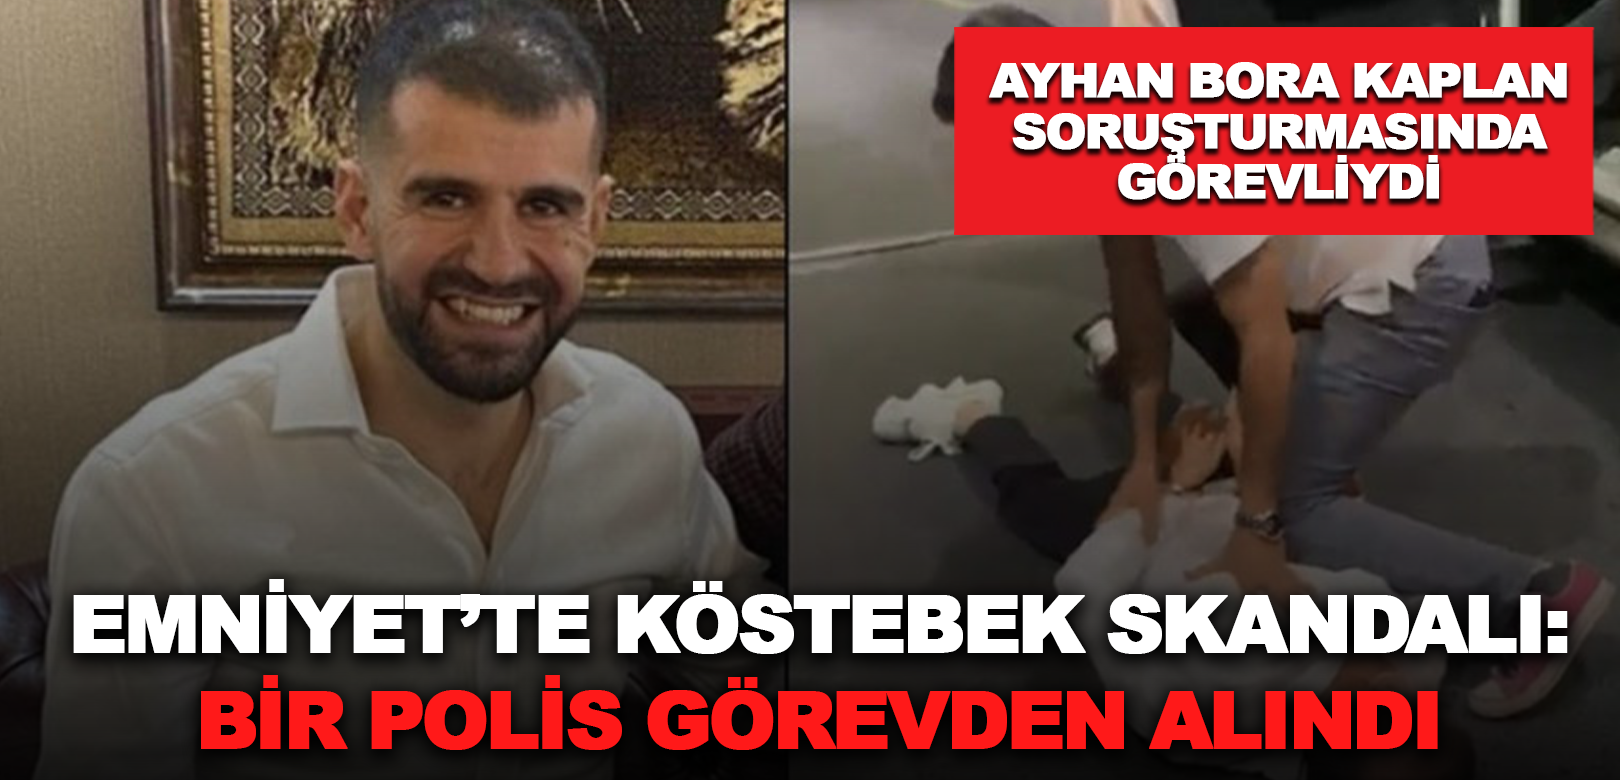 Ayhan Bora Kaplan dosyasında 'köstebek' skandalı: Bir polis görevden alındı